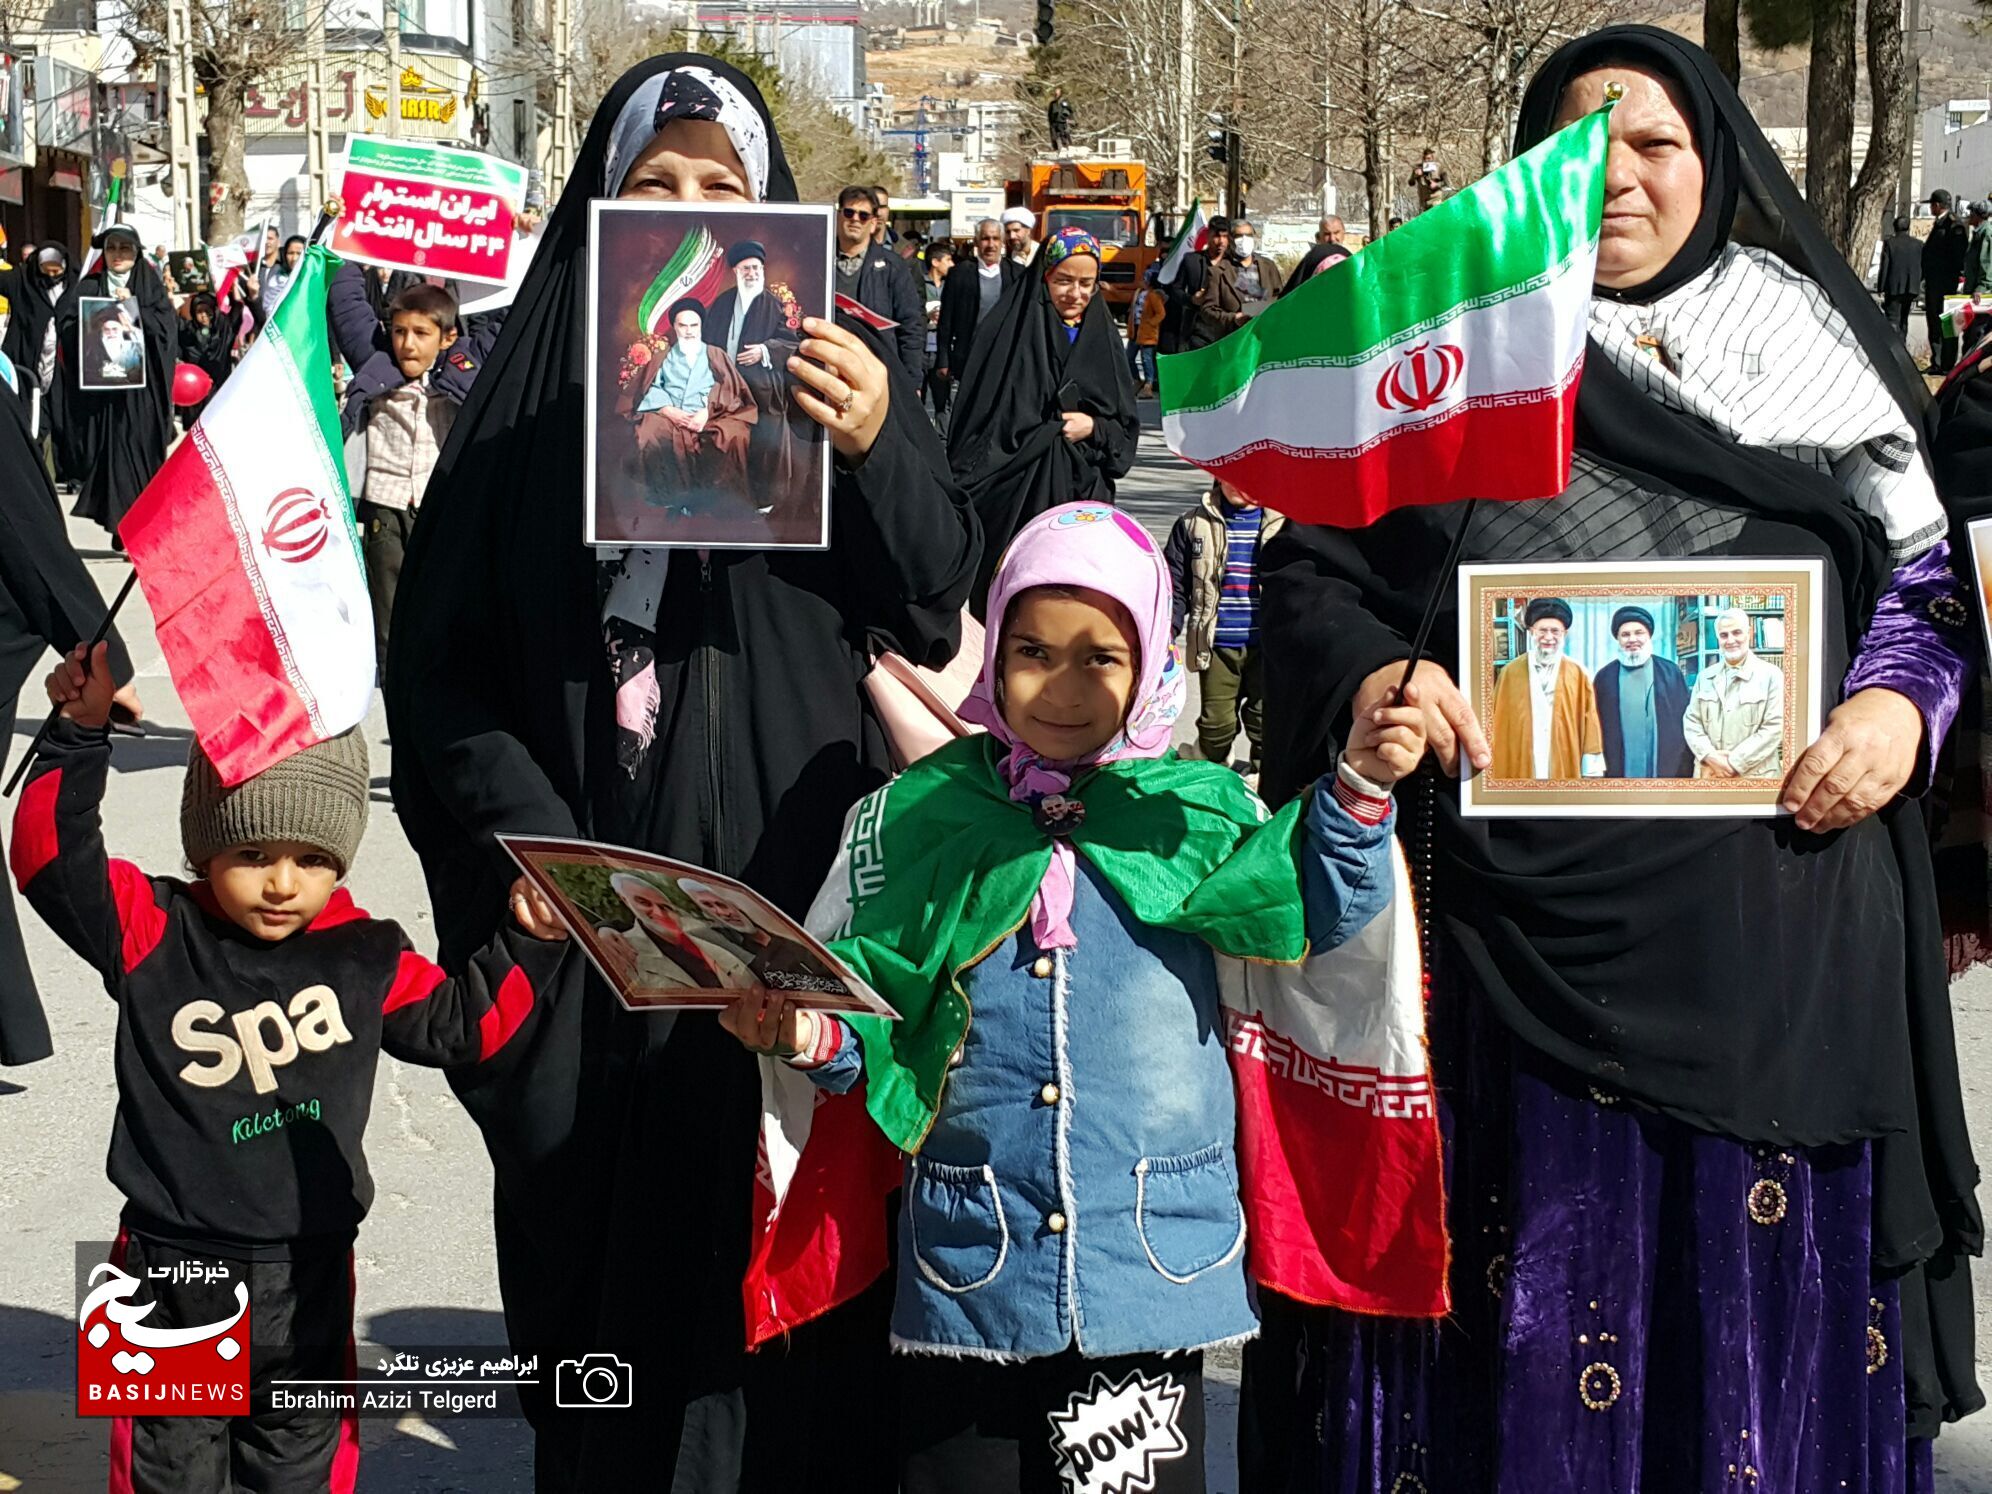 فیلم و تصاویر جذاب و دیدنی از شکوه و عظمت مردم در ۲۲ بهمن در یاسوج